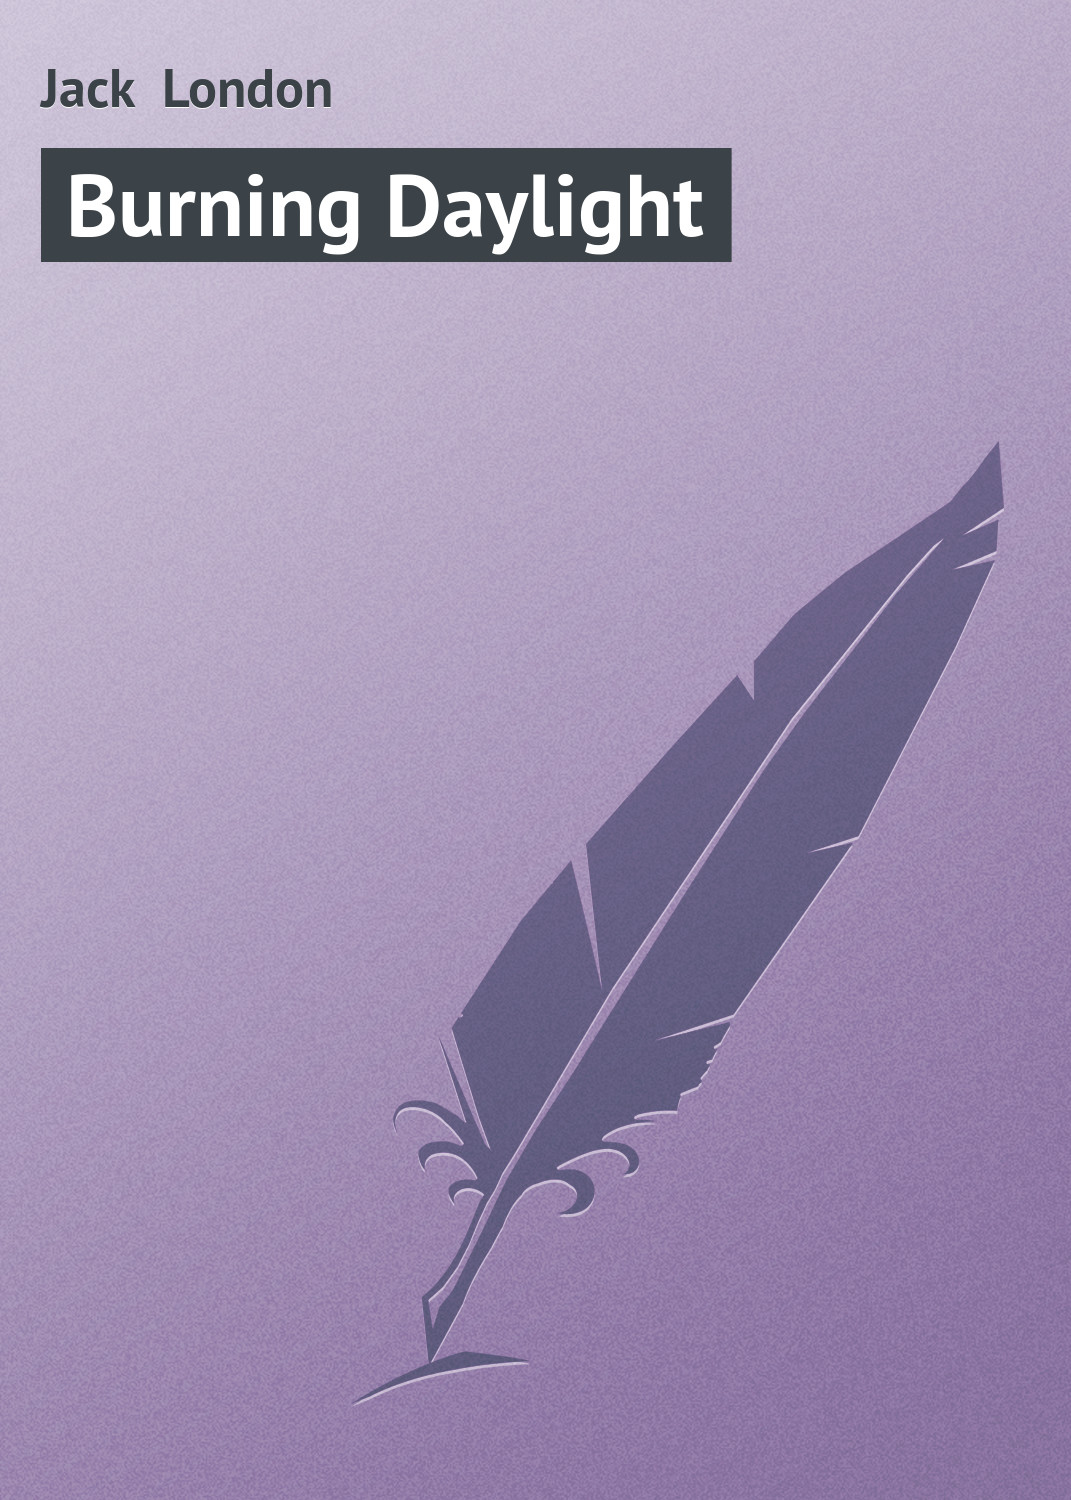 Книга Burning Daylight из серии , созданная Jack London, может относится к жанру Зарубежная старинная литература, Зарубежная классика. Стоимость электронной книги Burning Daylight с идентификатором 21103446 составляет 5.99 руб.